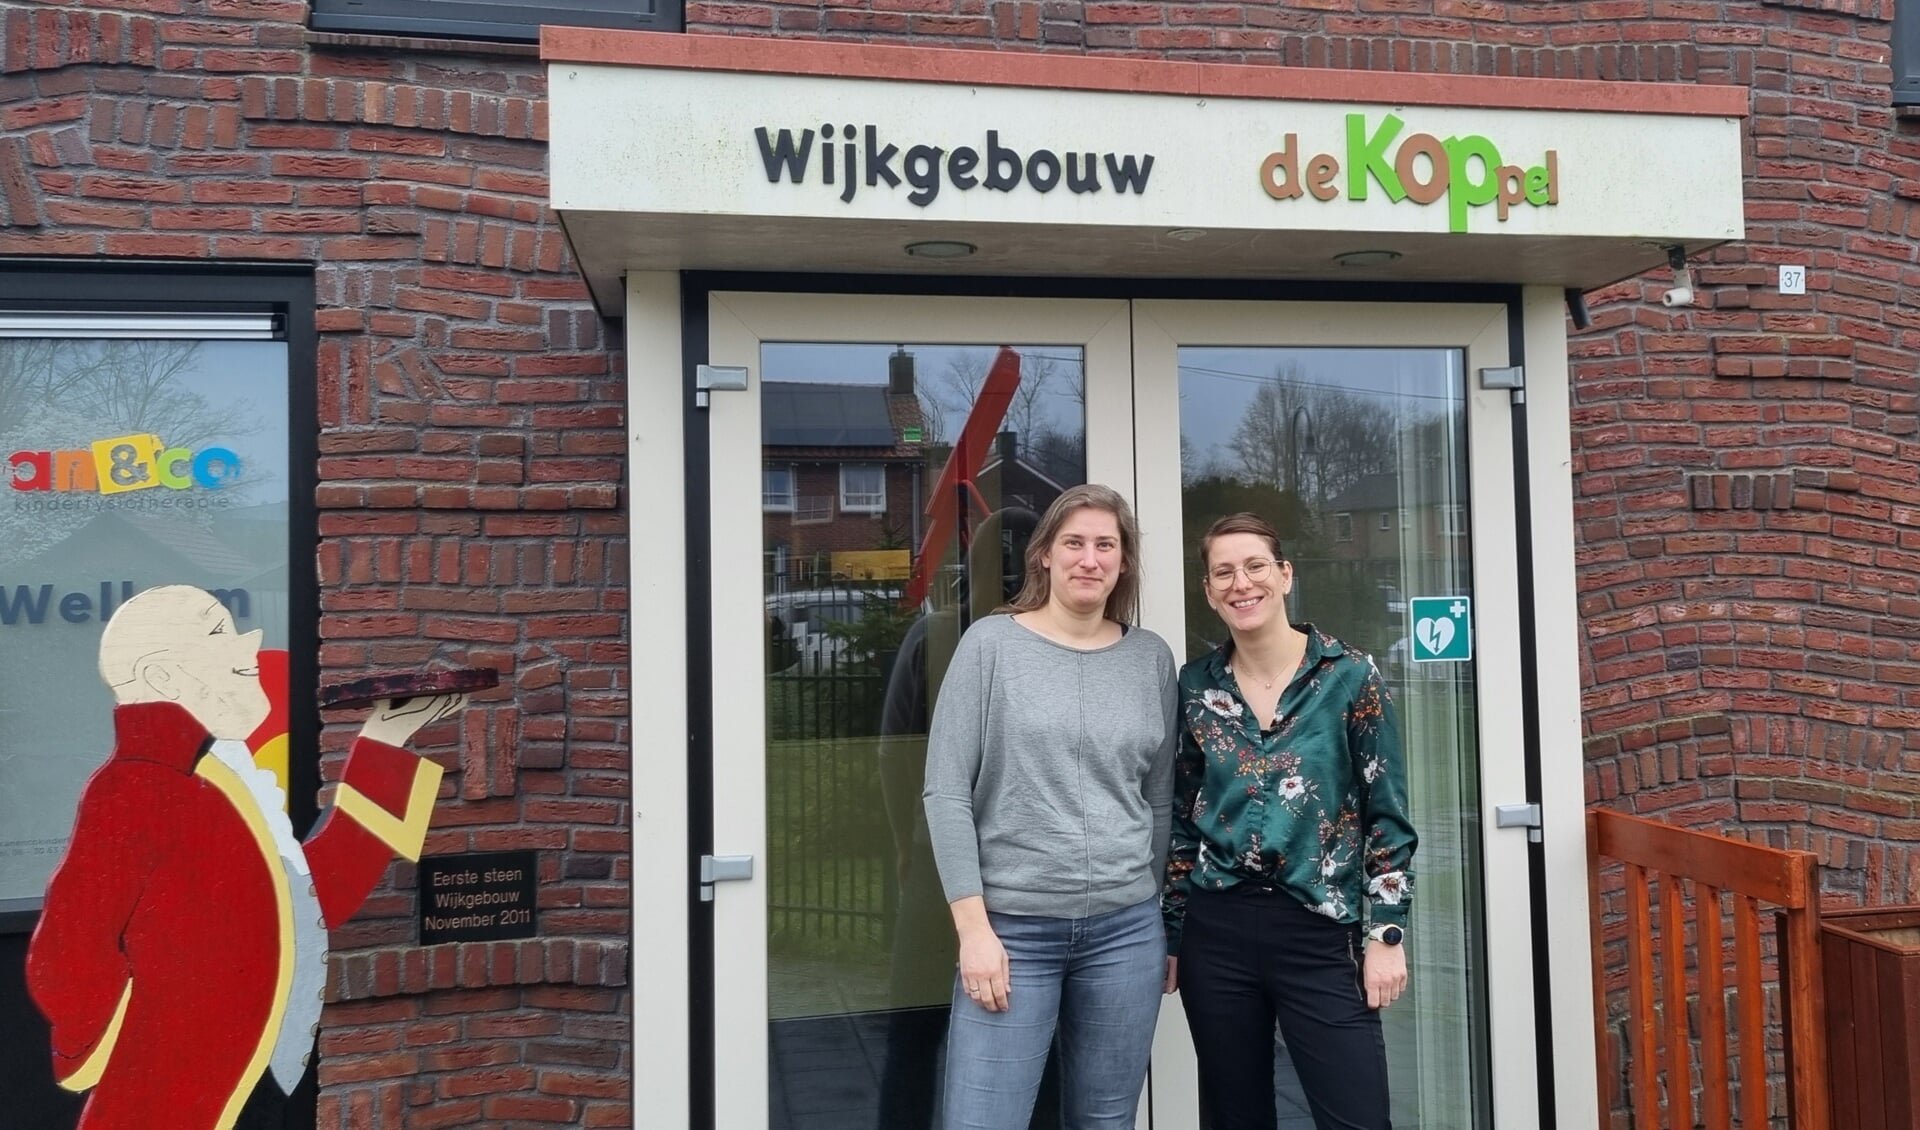 Willemijn Schutte van Wijkgebouw De Koppel en Soraya Wittebroek (r) van Speeltuin De Koppel. Foto: Rob Weeber